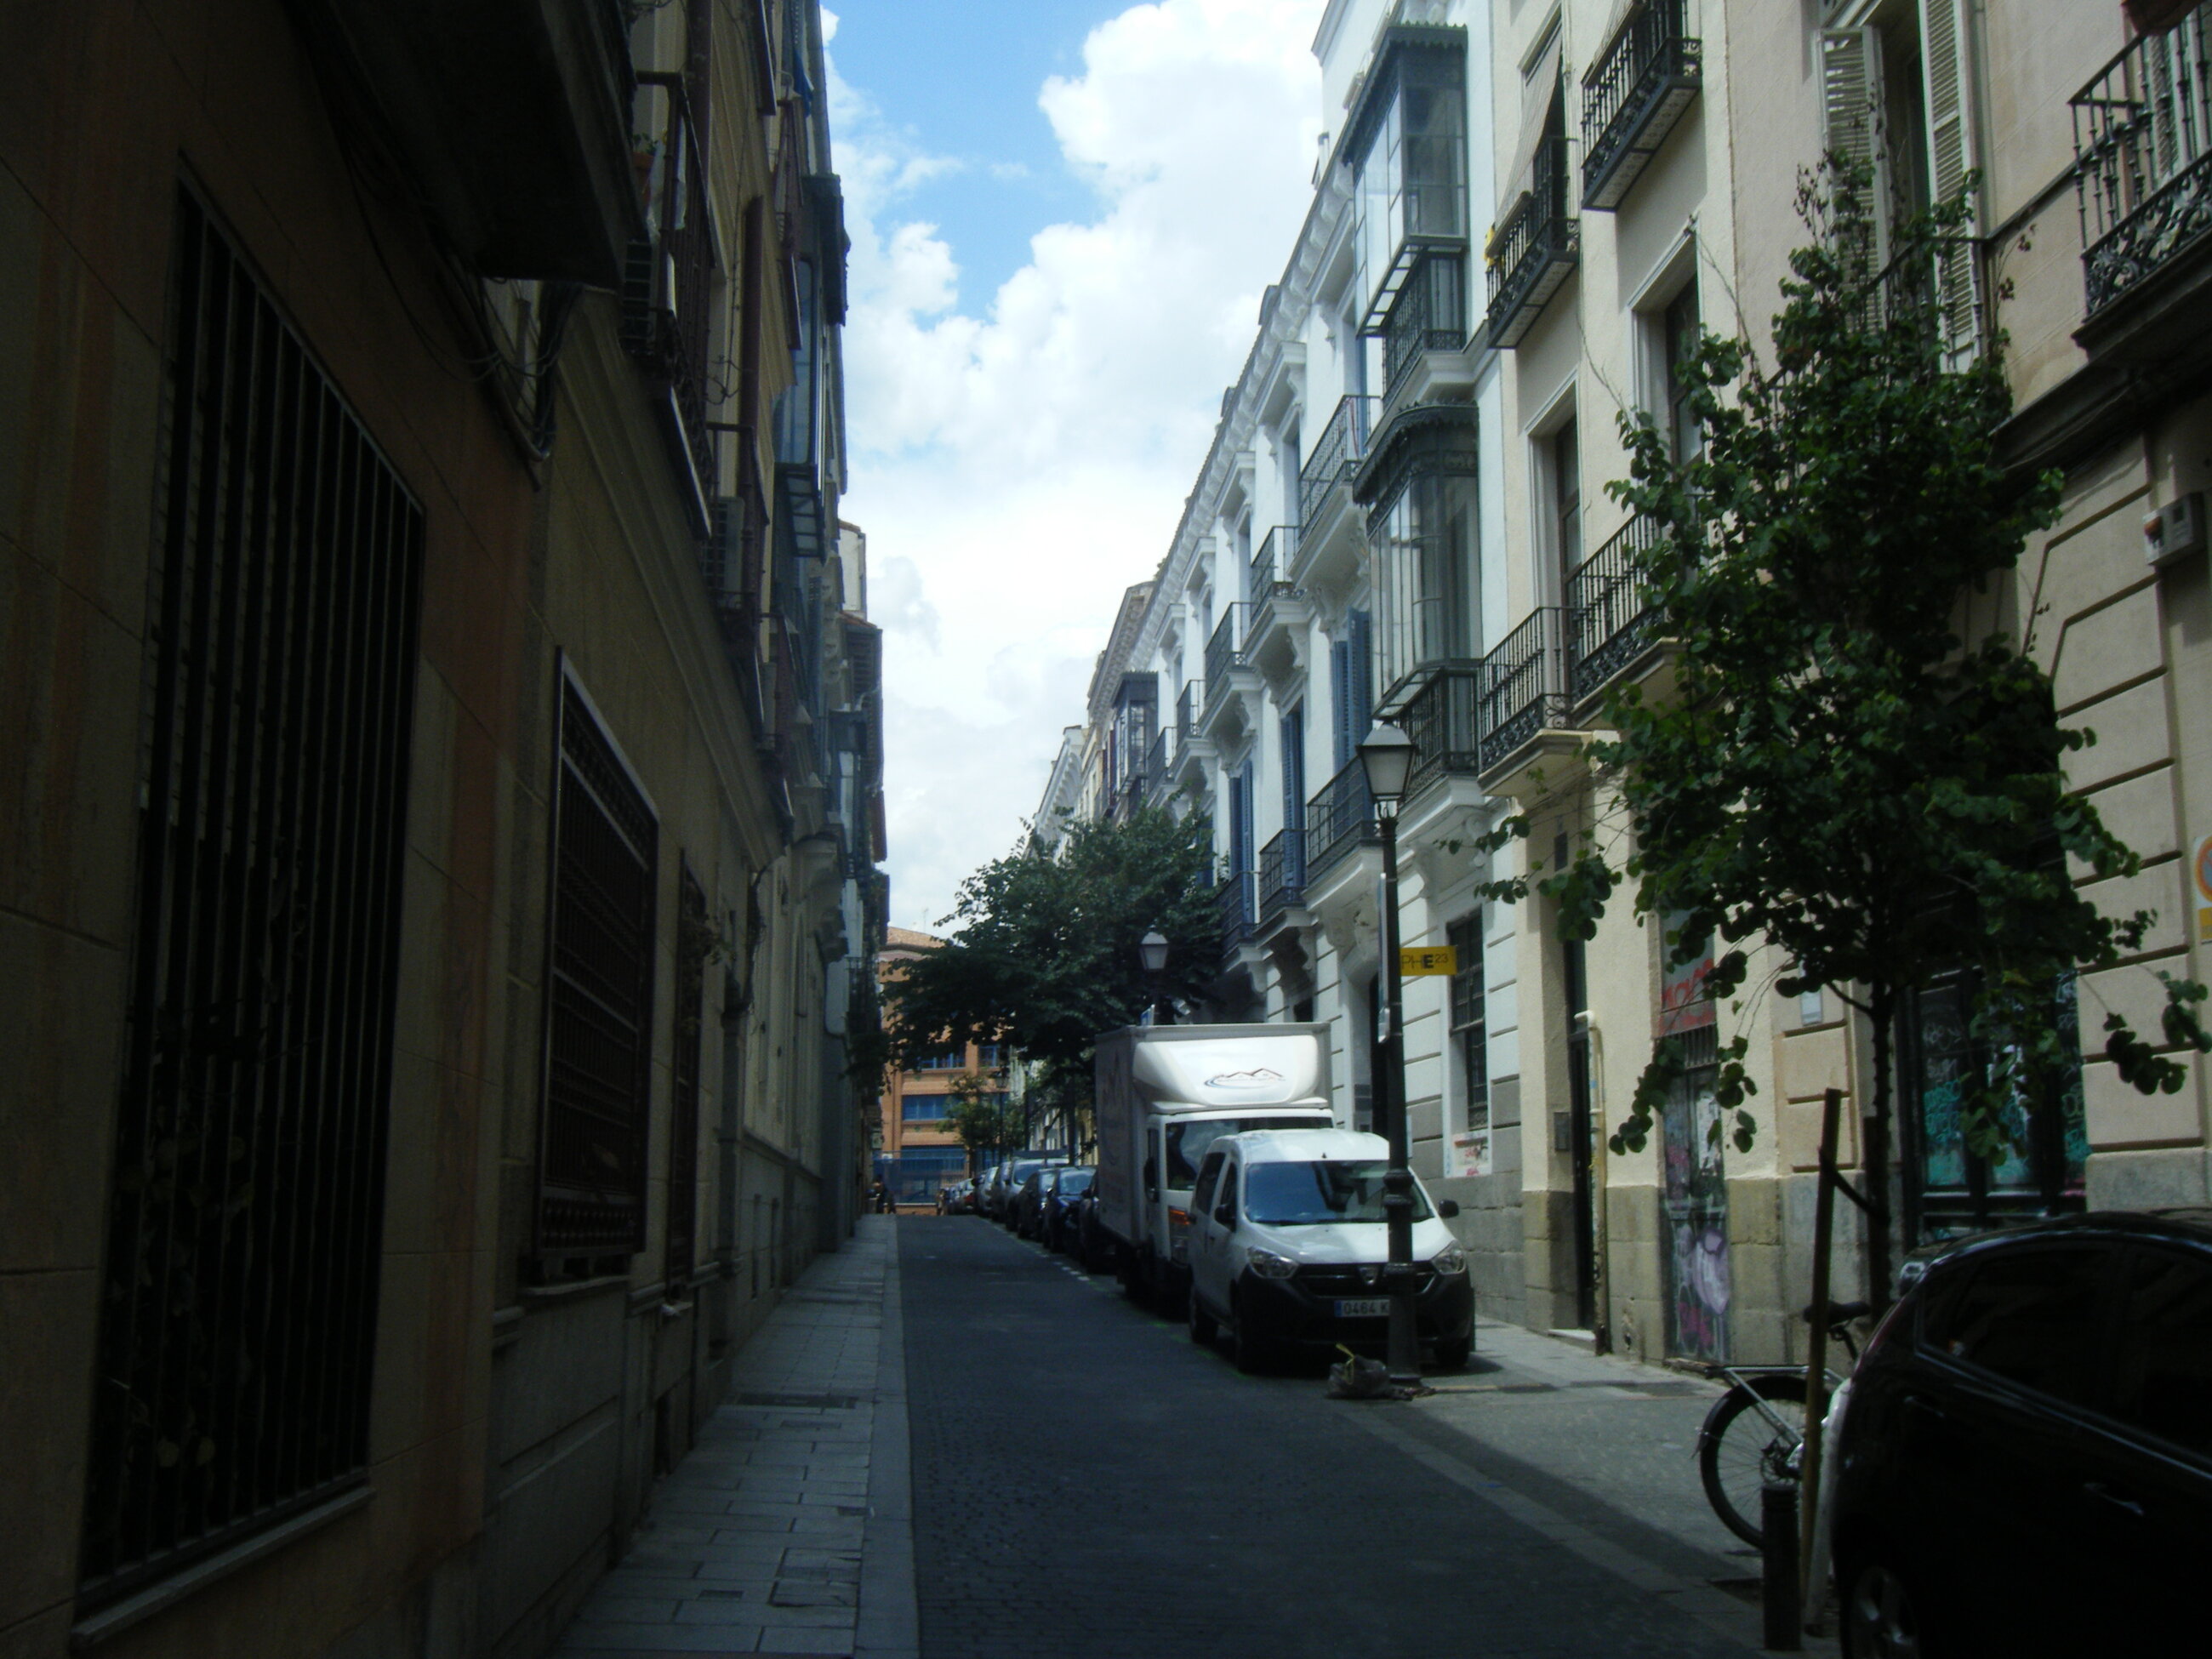 Street where I resided! Short walk from Grand Via!